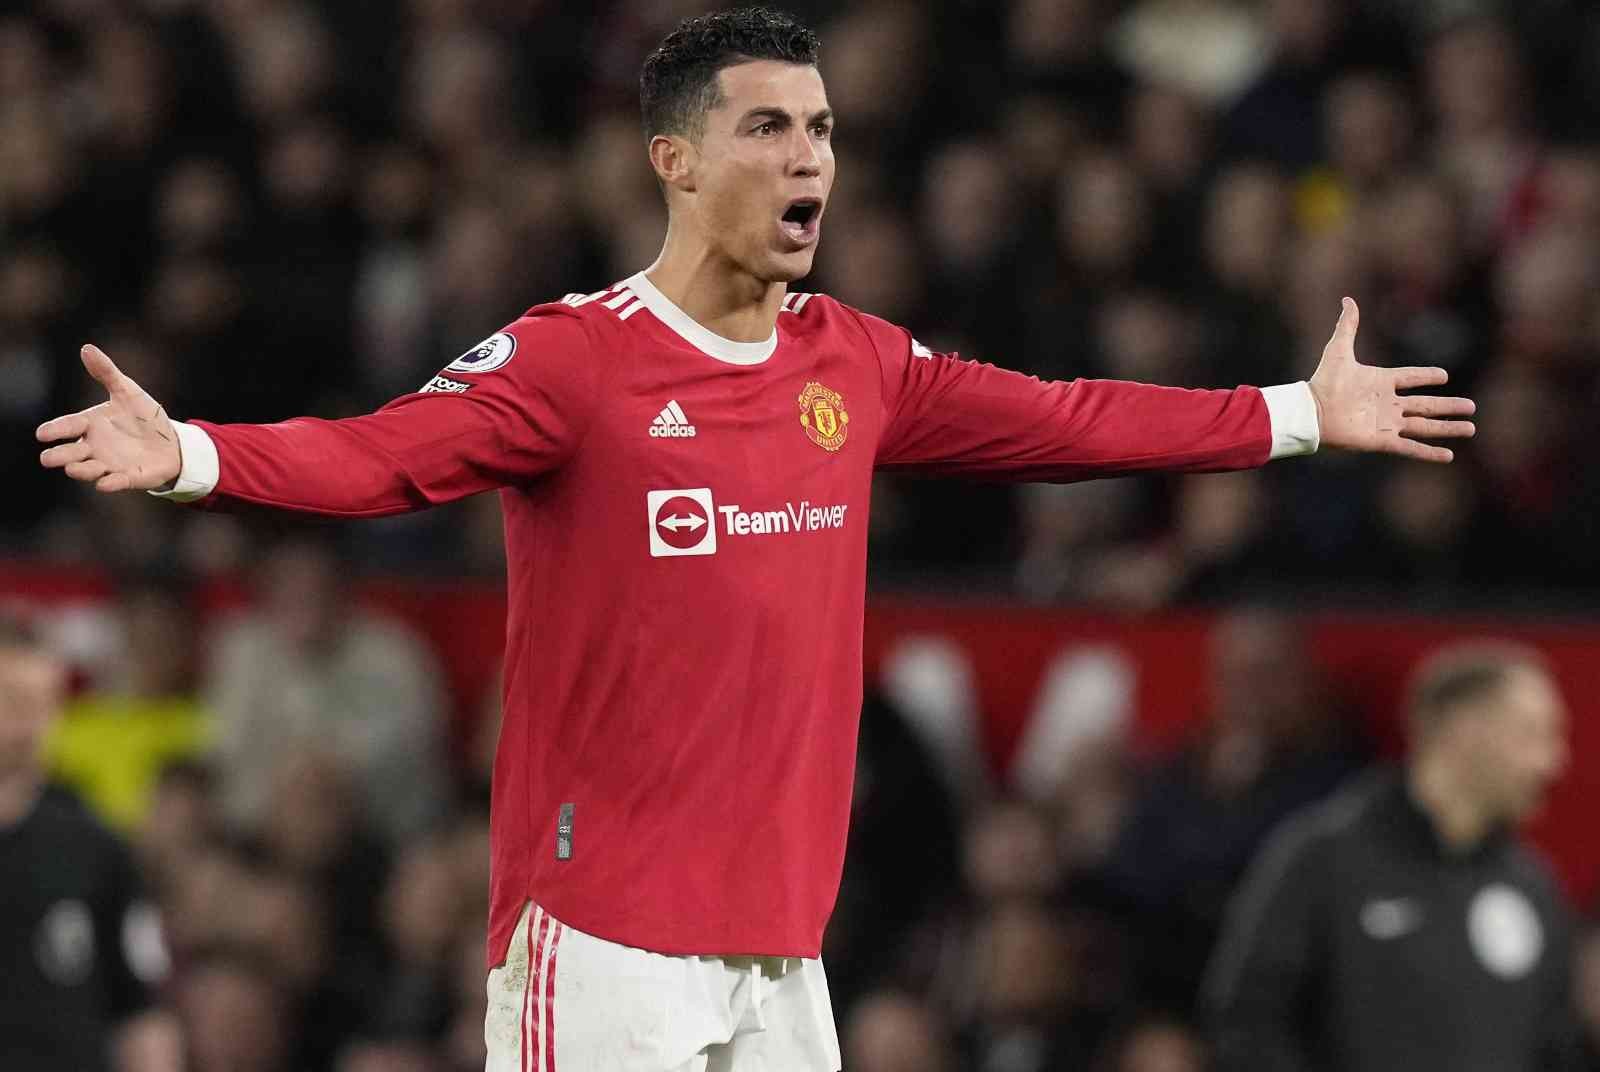 Manchester United’ın Portekizli yıldızı Cristiano Ronaldo, Tottenham ağlarına attığı 3 golle birlikte kariyerinde 807 gole ulaşarak profesyonel ...